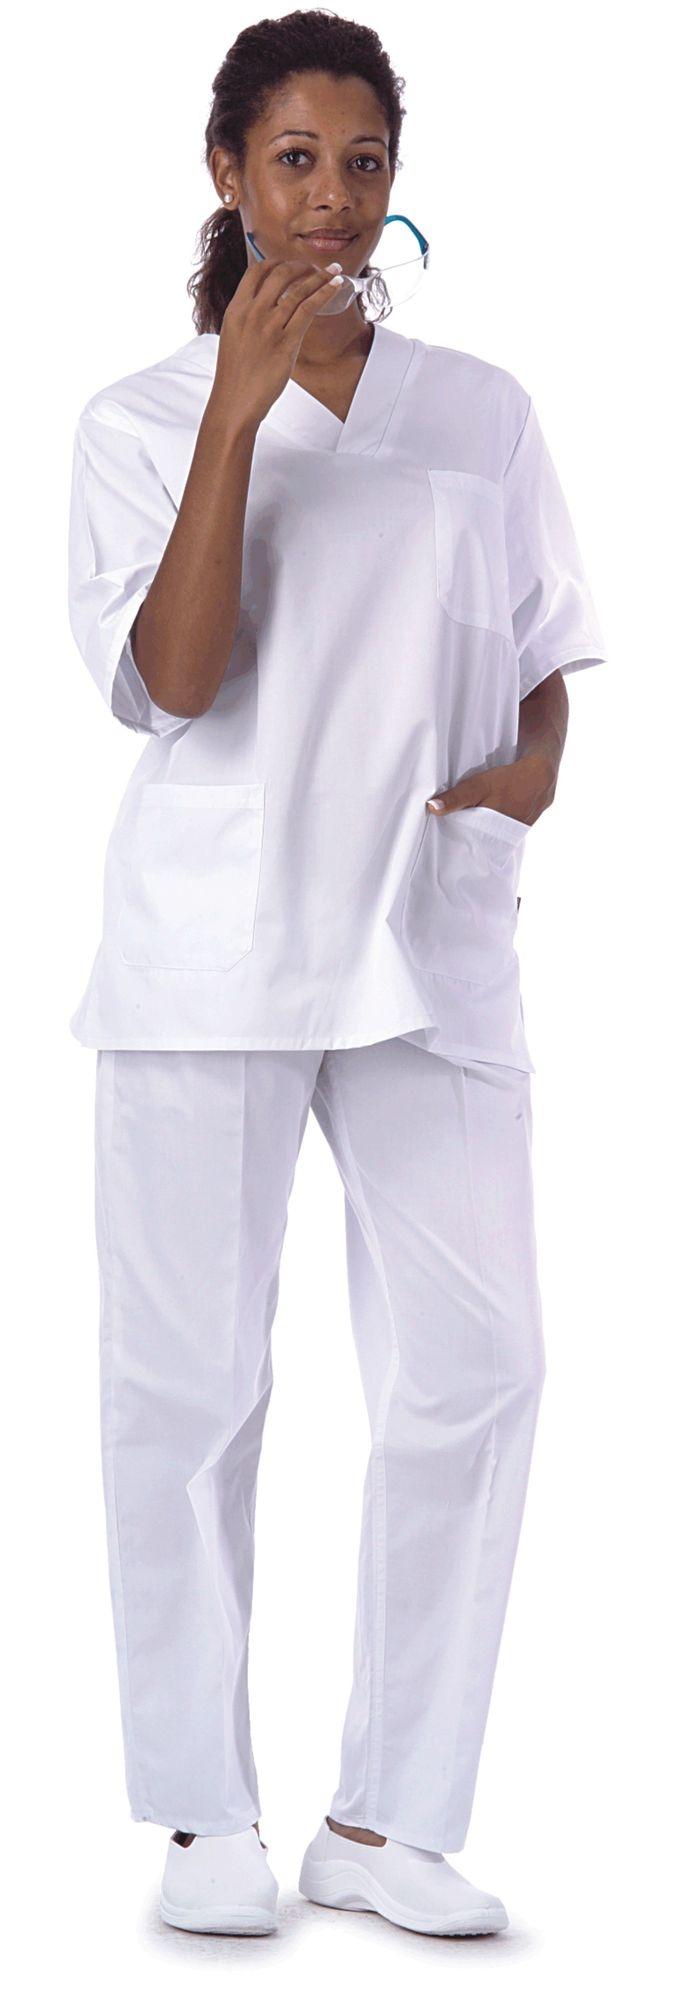 Foto Pantalón recto con elástico en cintura color blanco Talla XXL foto 290671